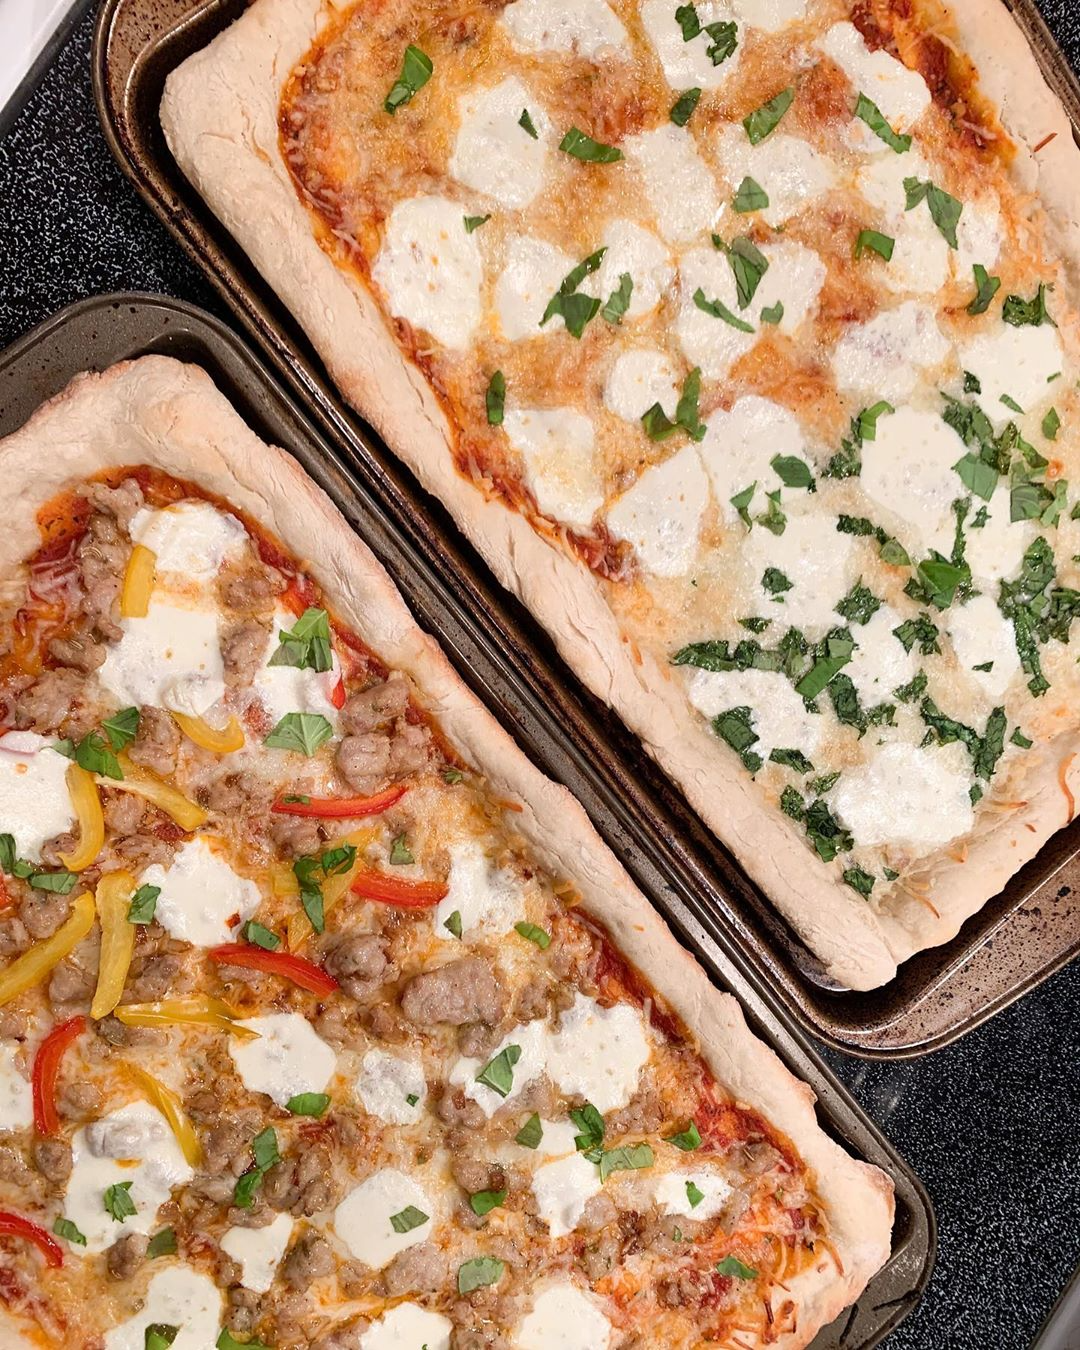 two rectangular pizzas topped with fresh mozzarella, herbs, veggies, and sausage.